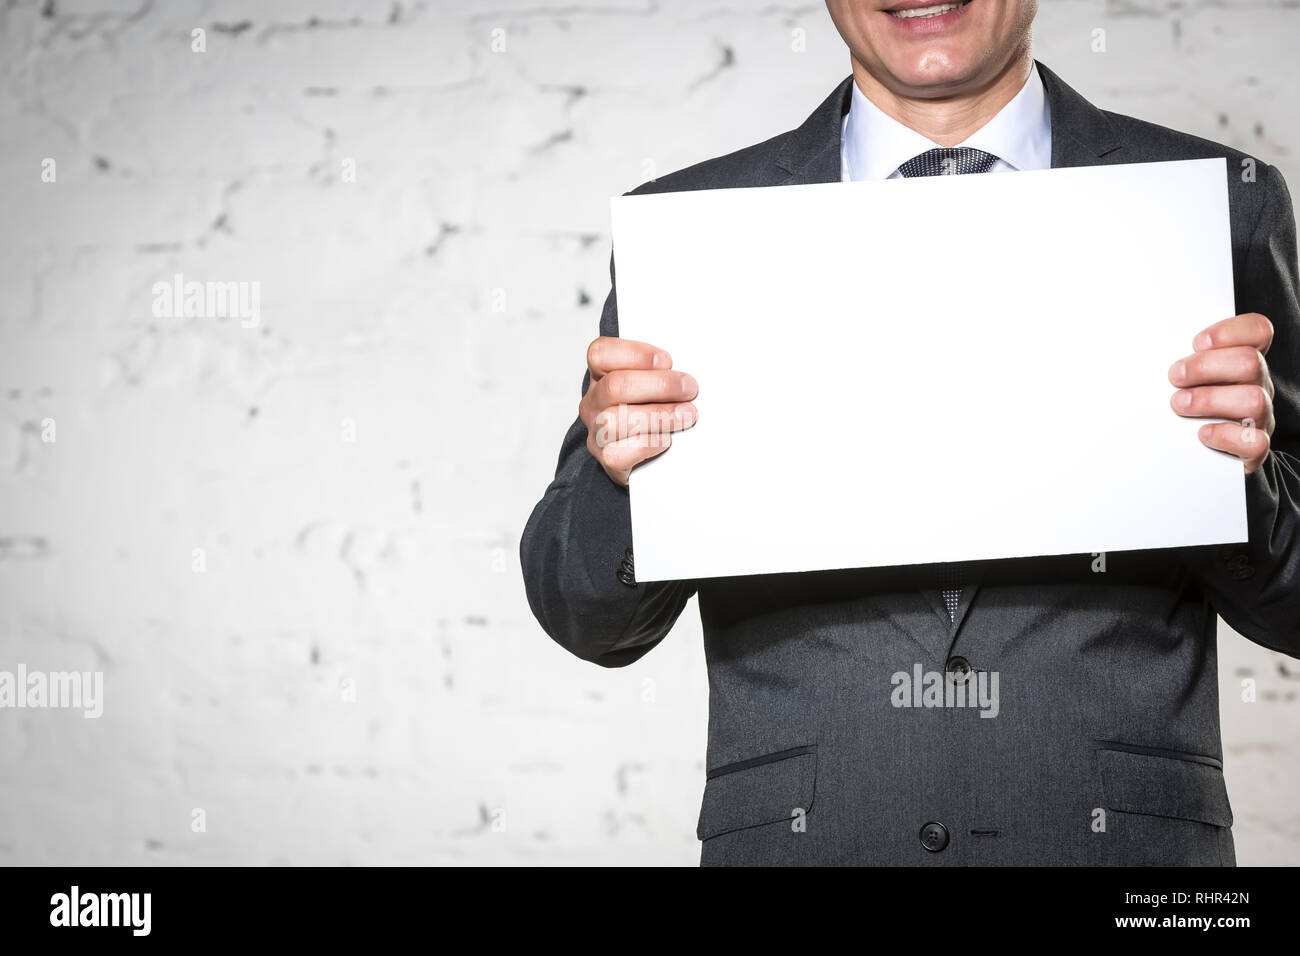 Mittelteil der lächelnden Geschäftsmann Holding leeres Plakat während gegen weiße Mauer stehend Stockfoto